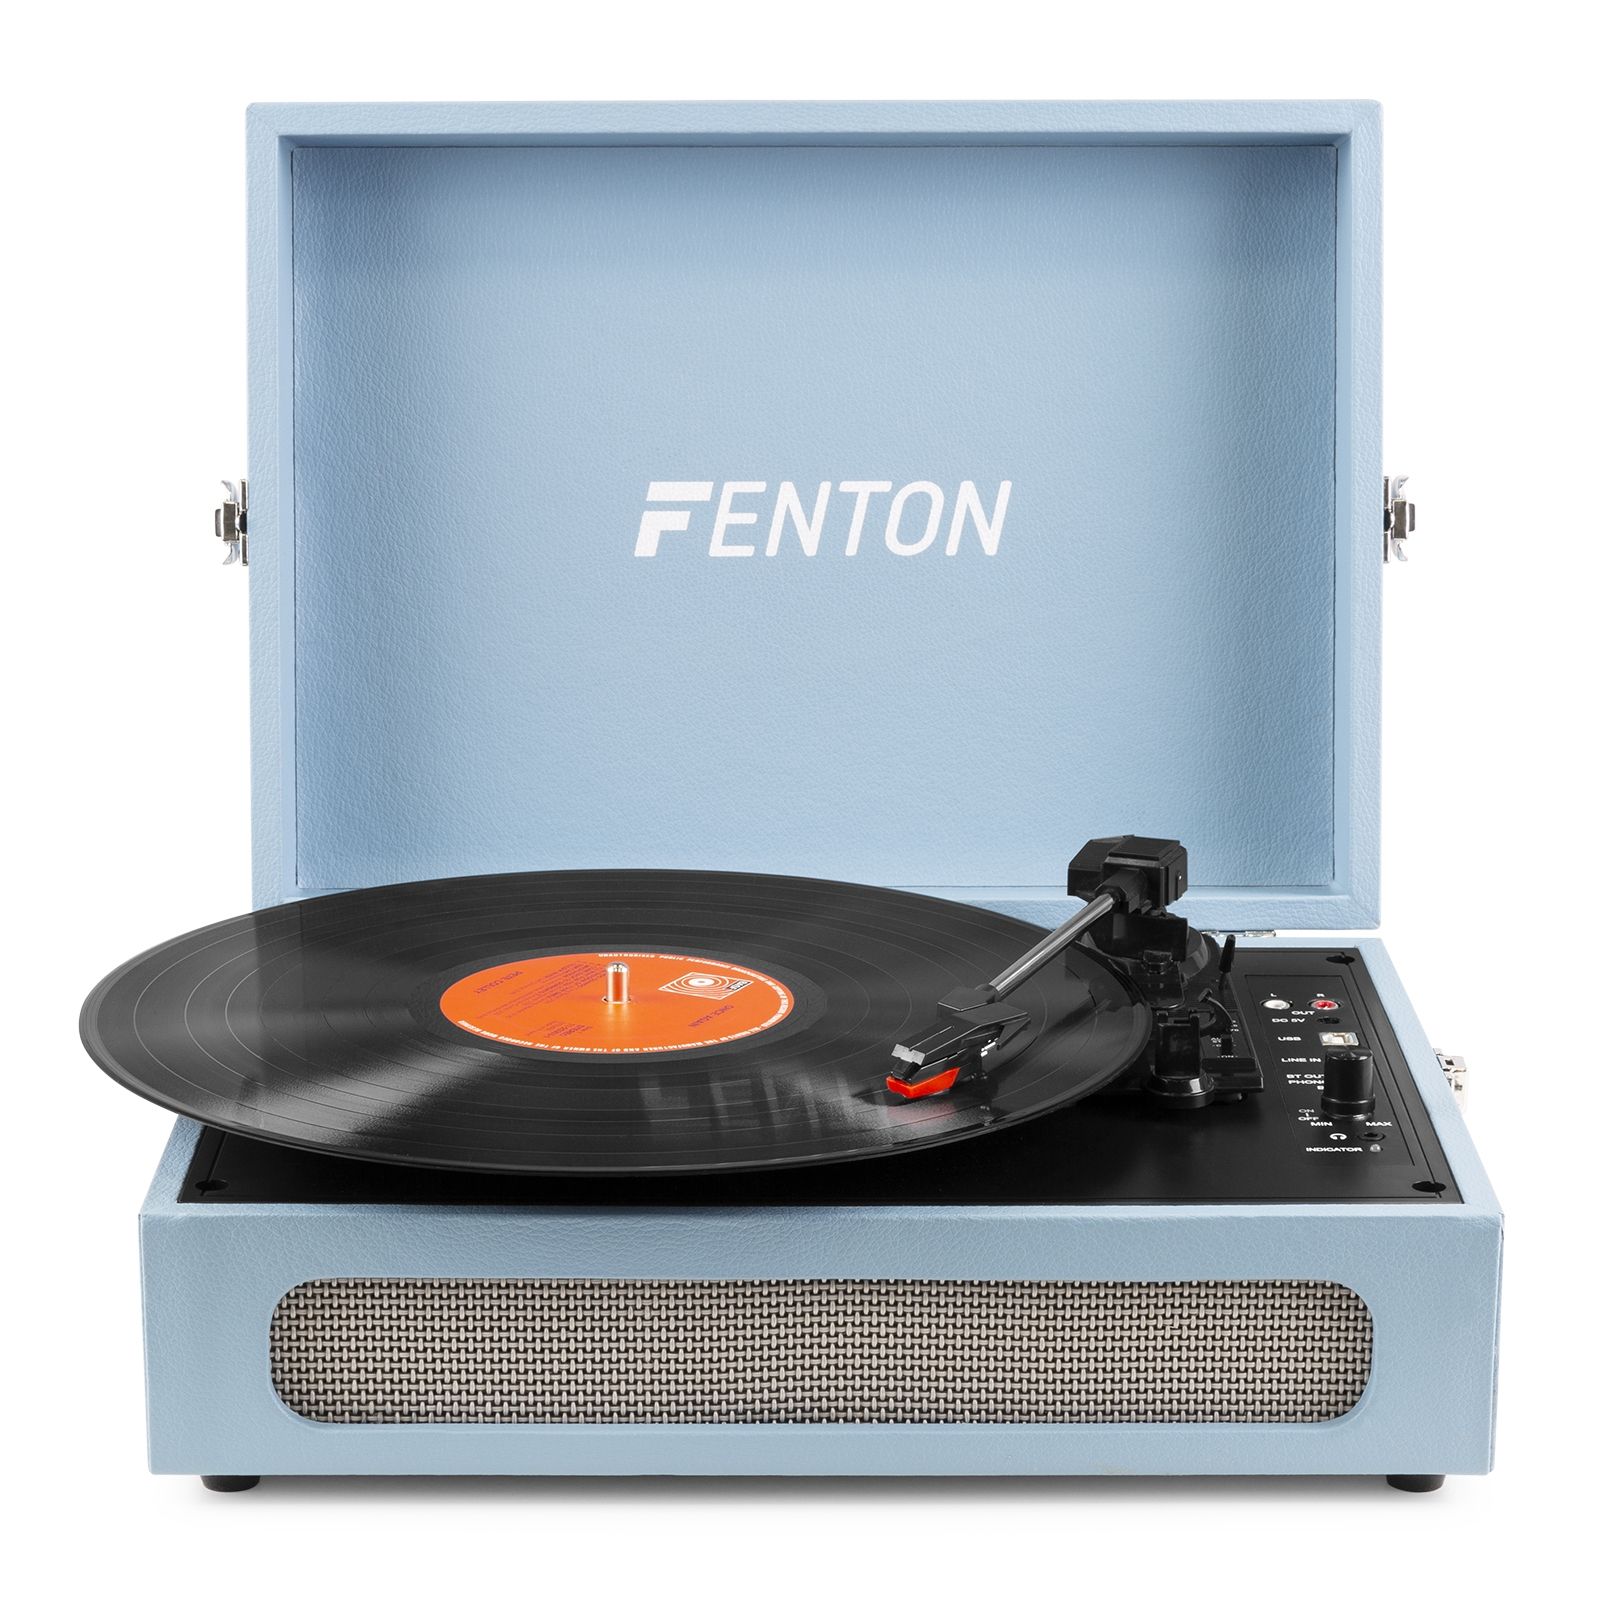 Fenton Retourdeal -  RP118E retro platenspeler met Bluetooth in /out en